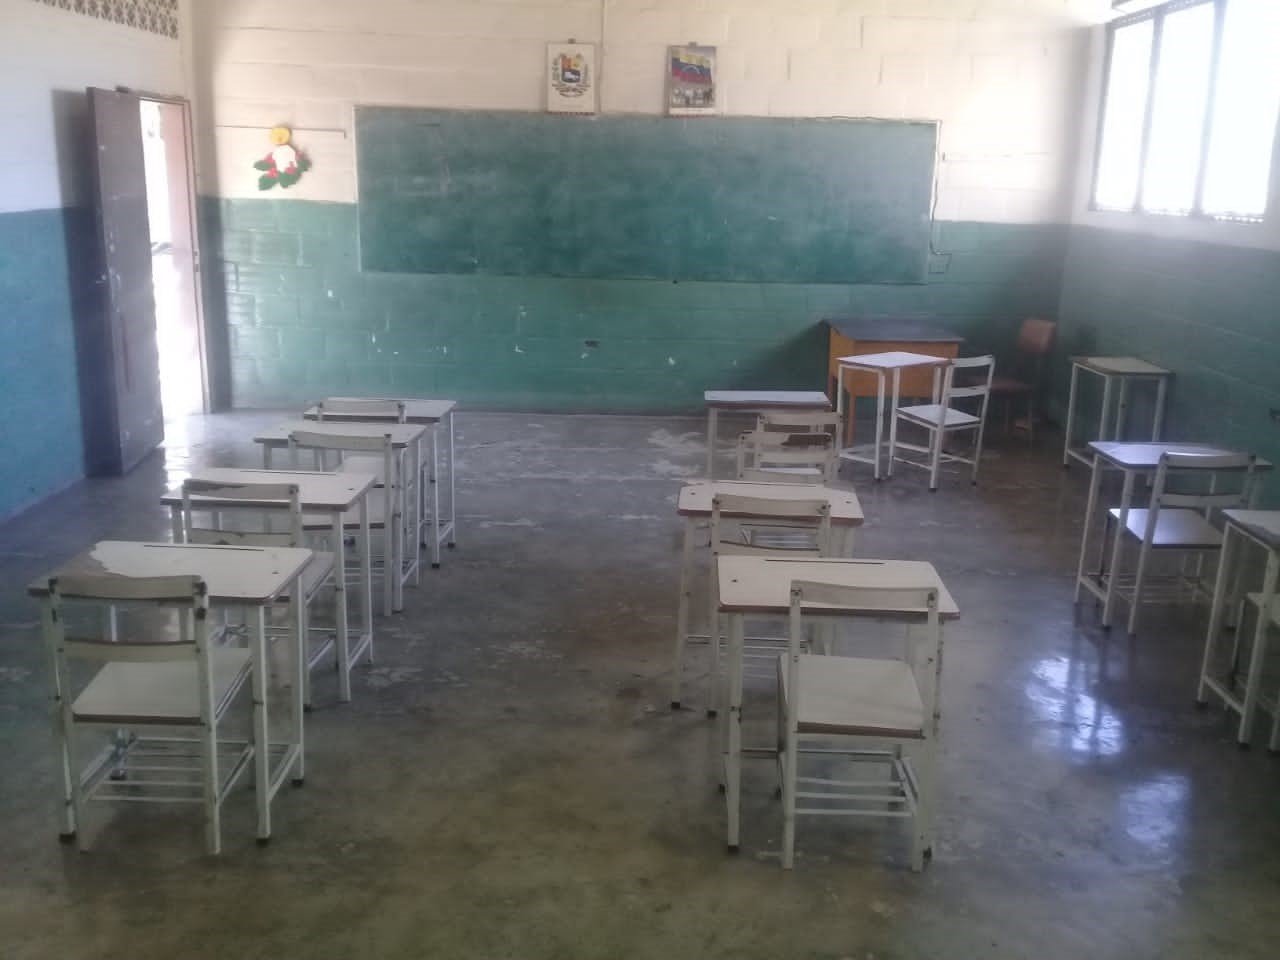 Reportaje Venezuela: “En la escuela ya no hay maestros, materiales, uniformes…”